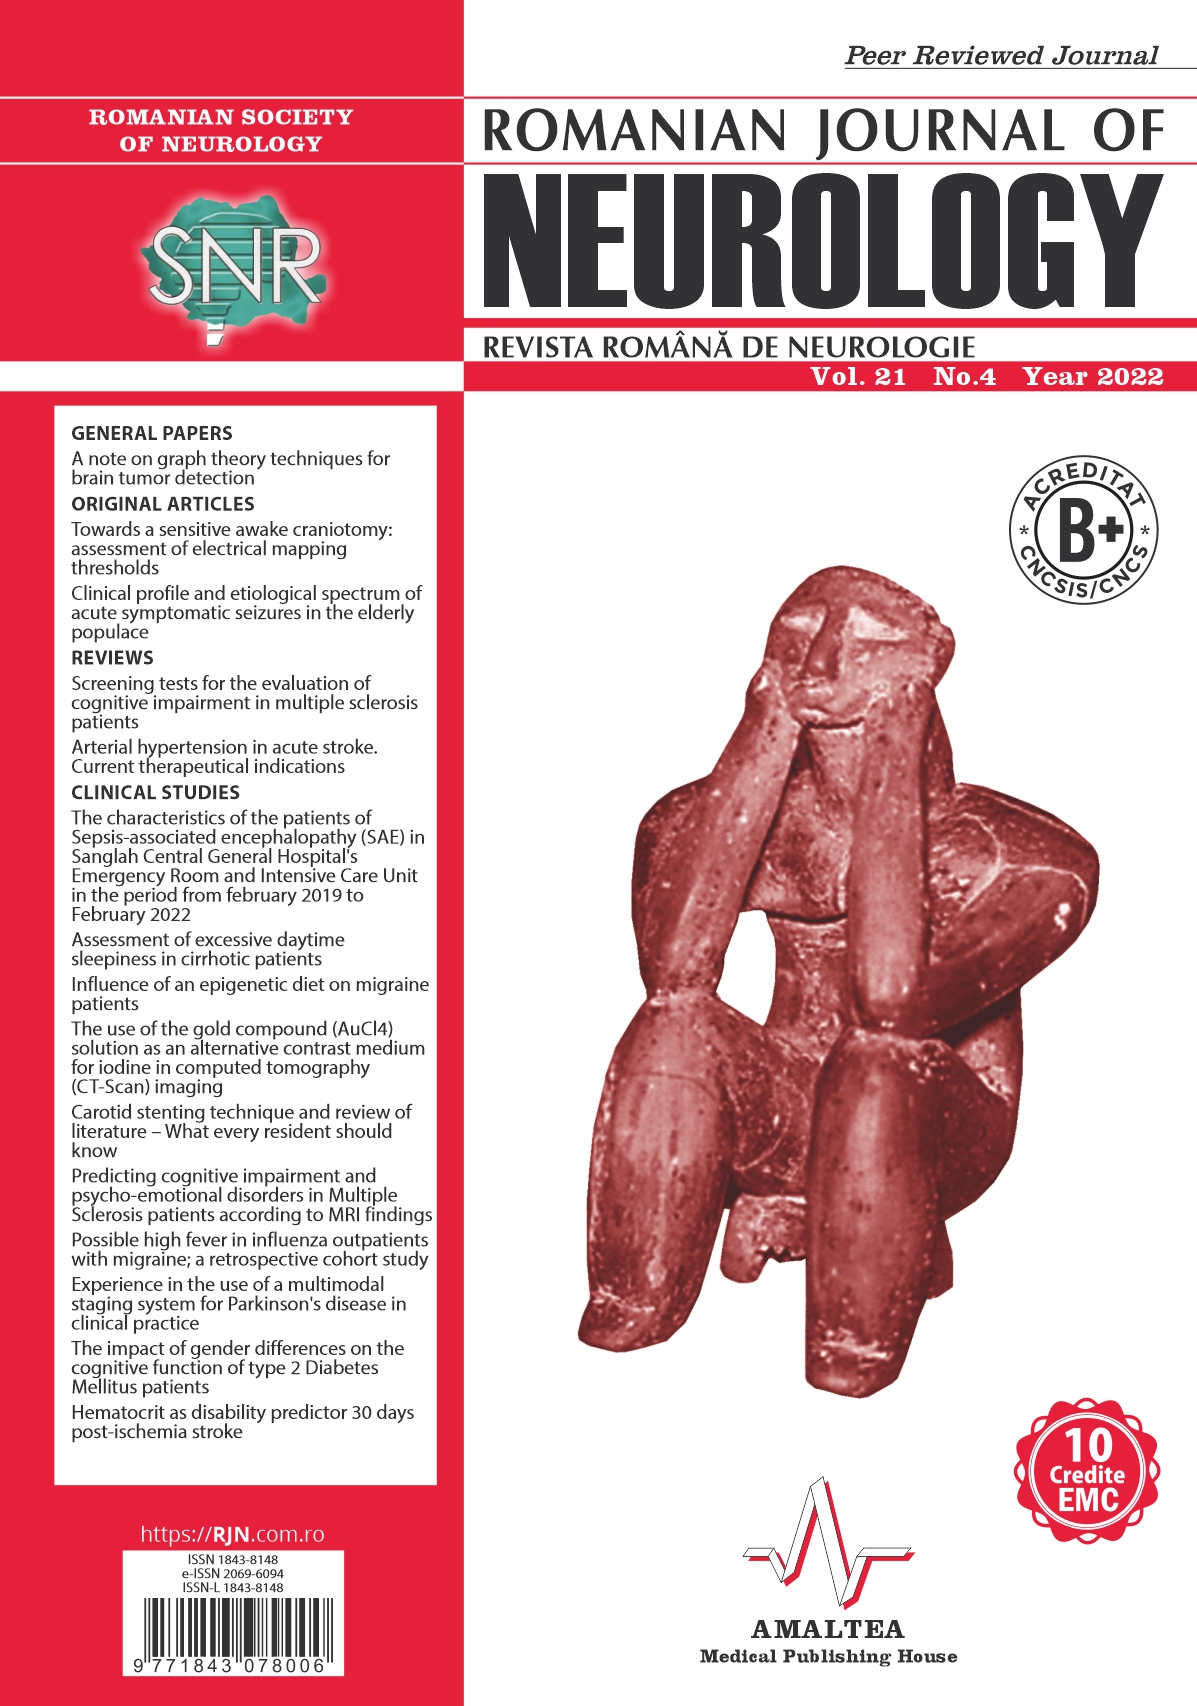 Romanian Journal of Neurology, Volume 21, No. 4, 2022